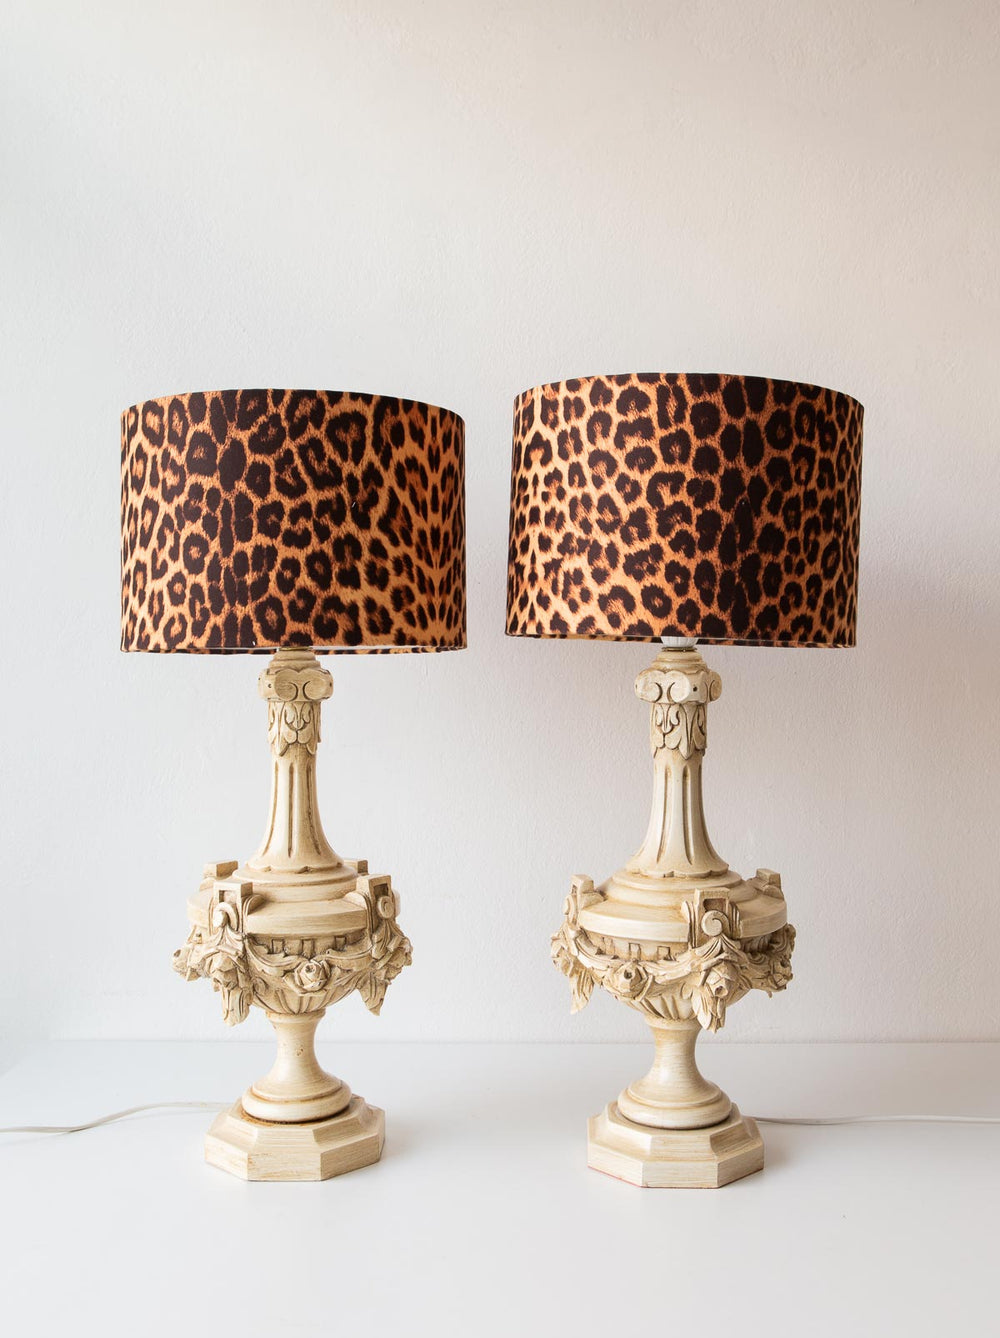 Lámparas de mesa españolas madera tallada y lacada pantallas leopardo